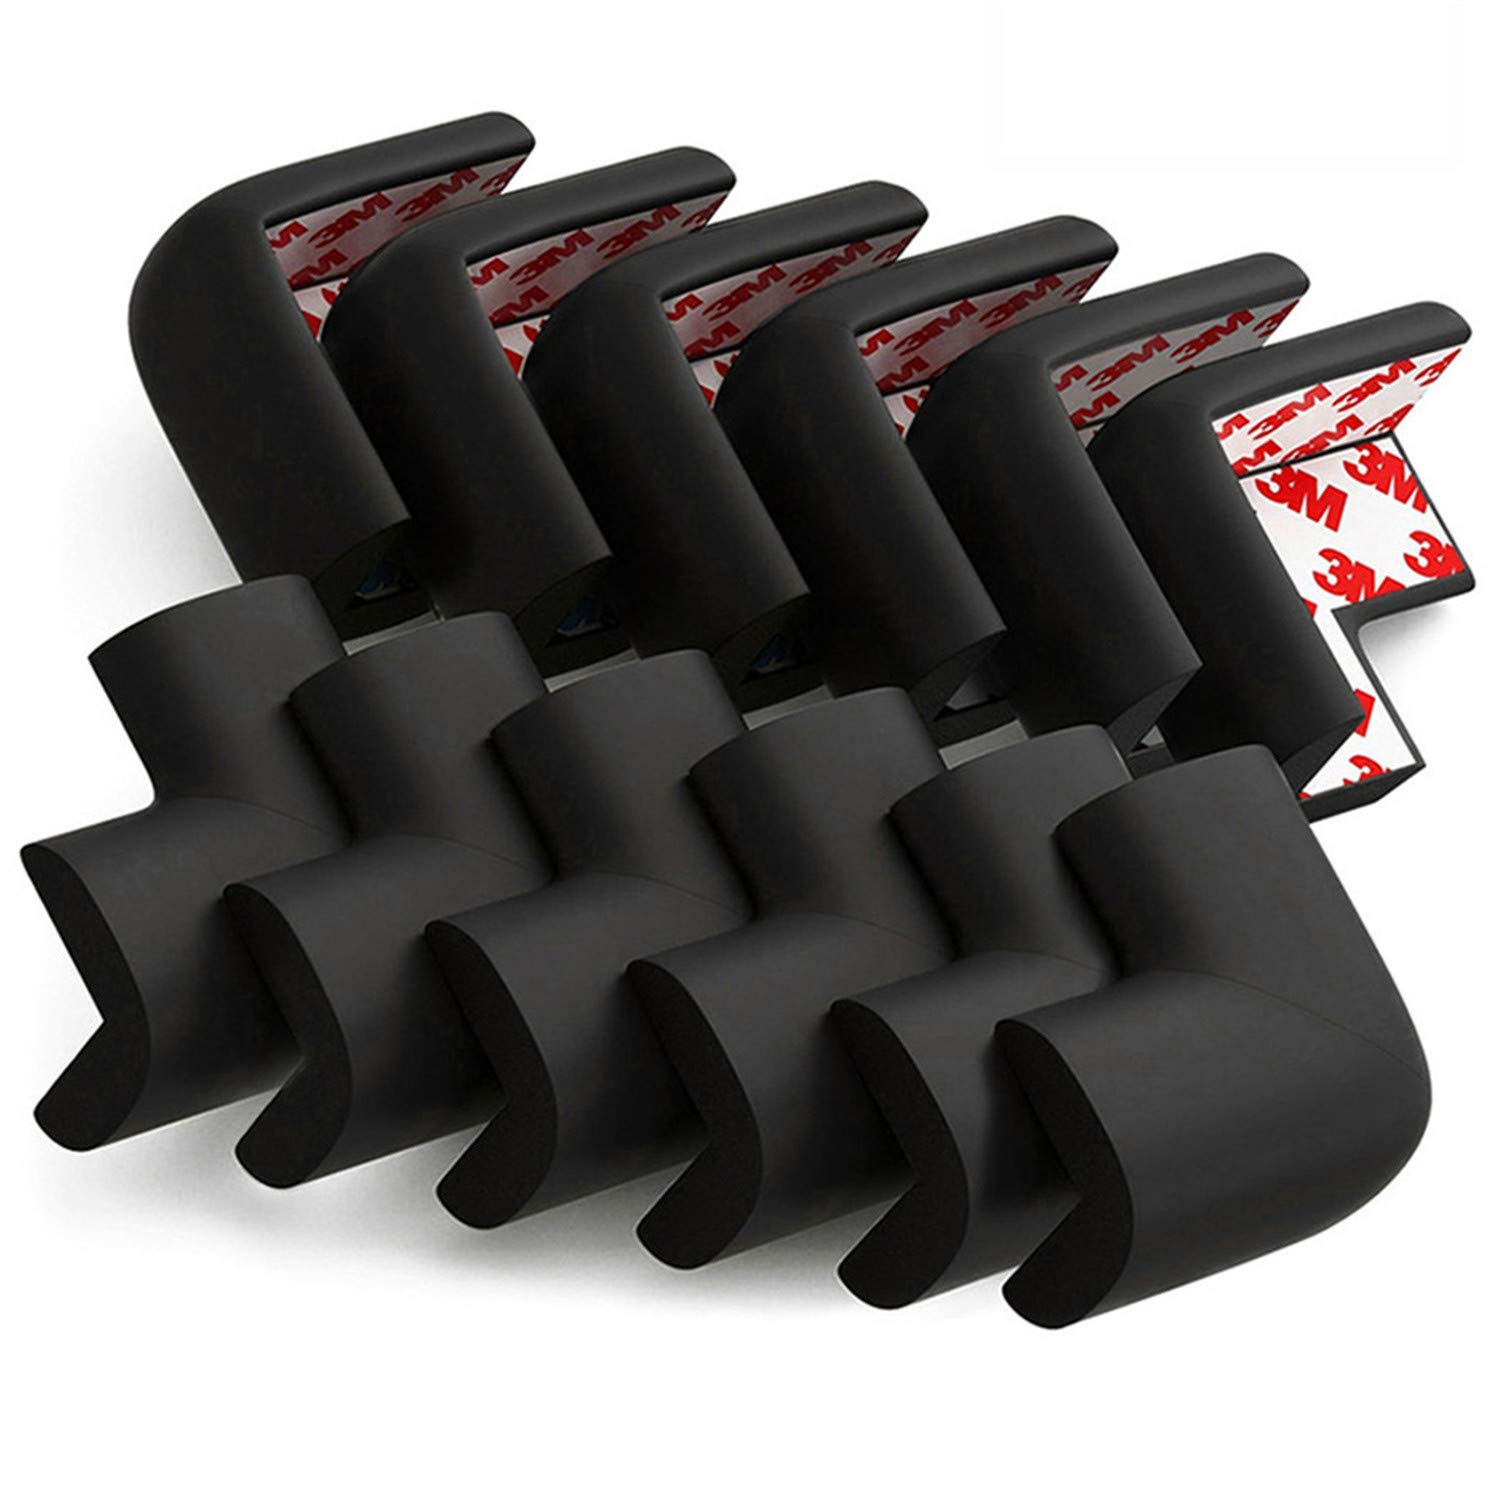 FixtureDisplays 20-Piece Corner Guards Cushion Protectors Bumper